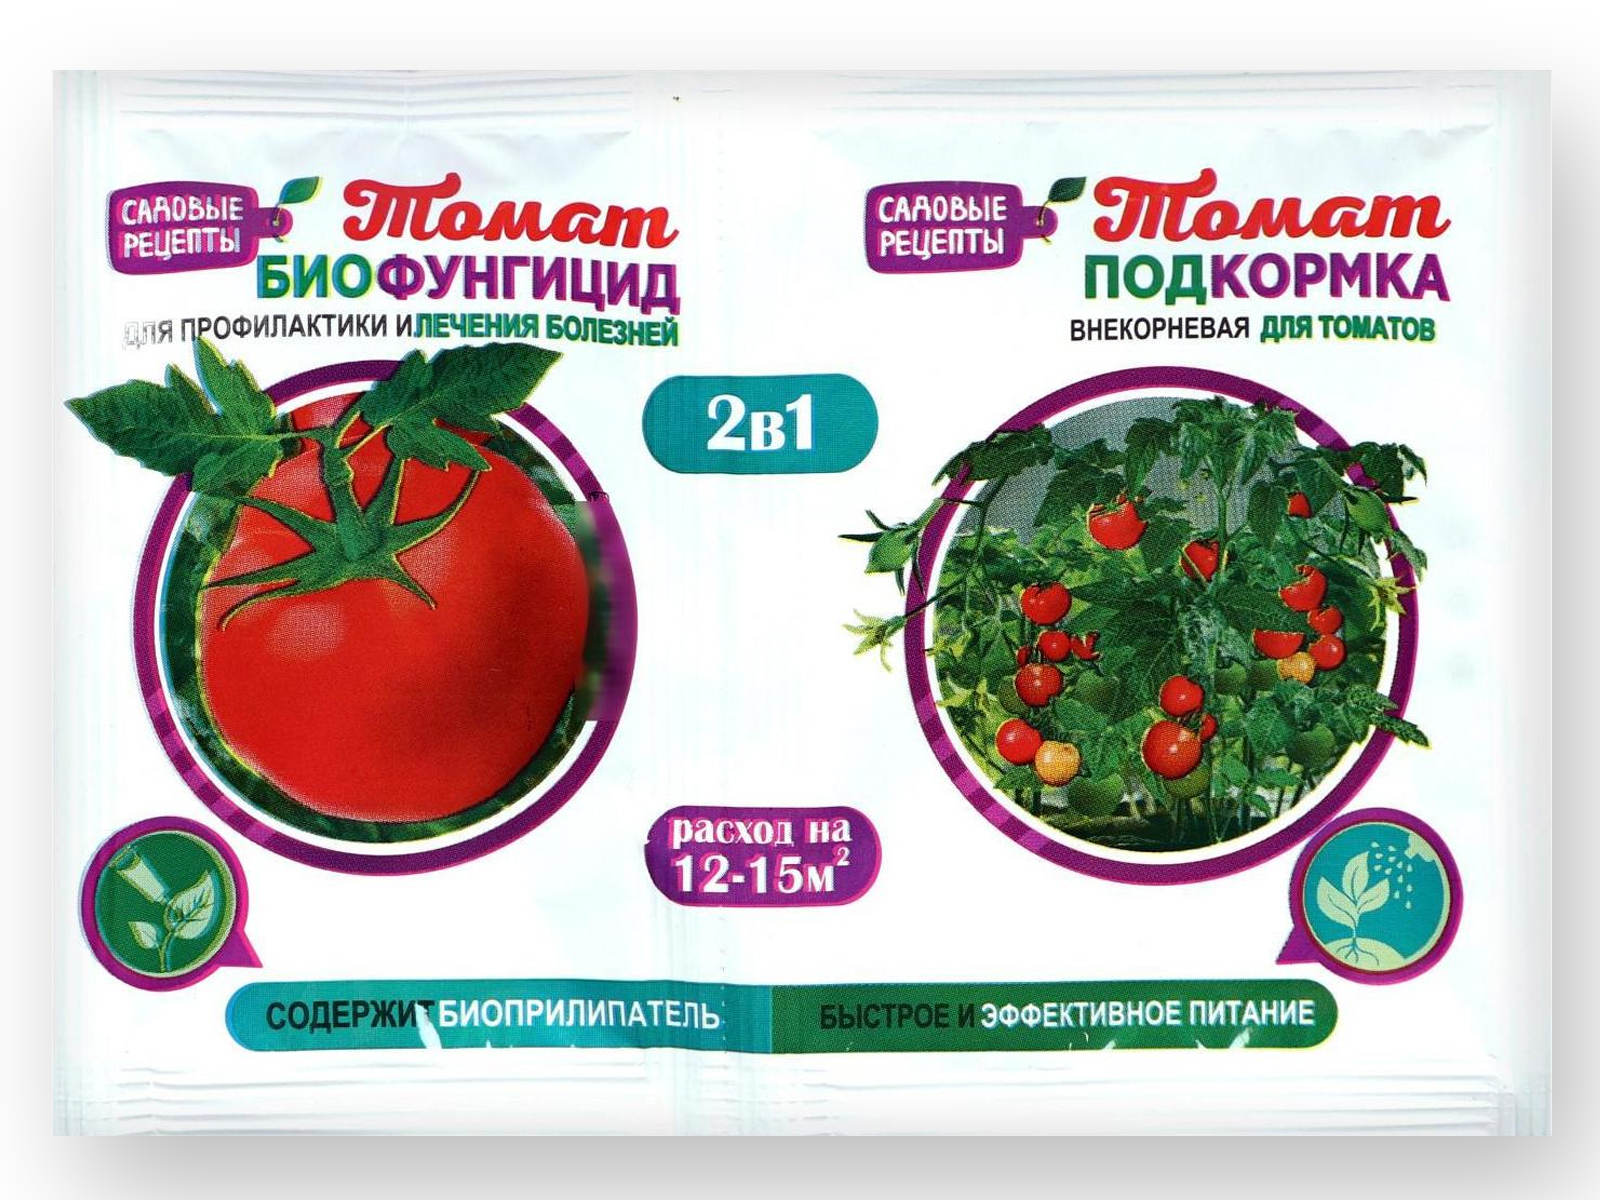 2 подкормка томатов. Клубника-земляника 2в1 10гр/2мл биофунгицид+инсектицид. Томат биофунгицид. Удобрение для томатов. Биофунгицид 2 в 1.